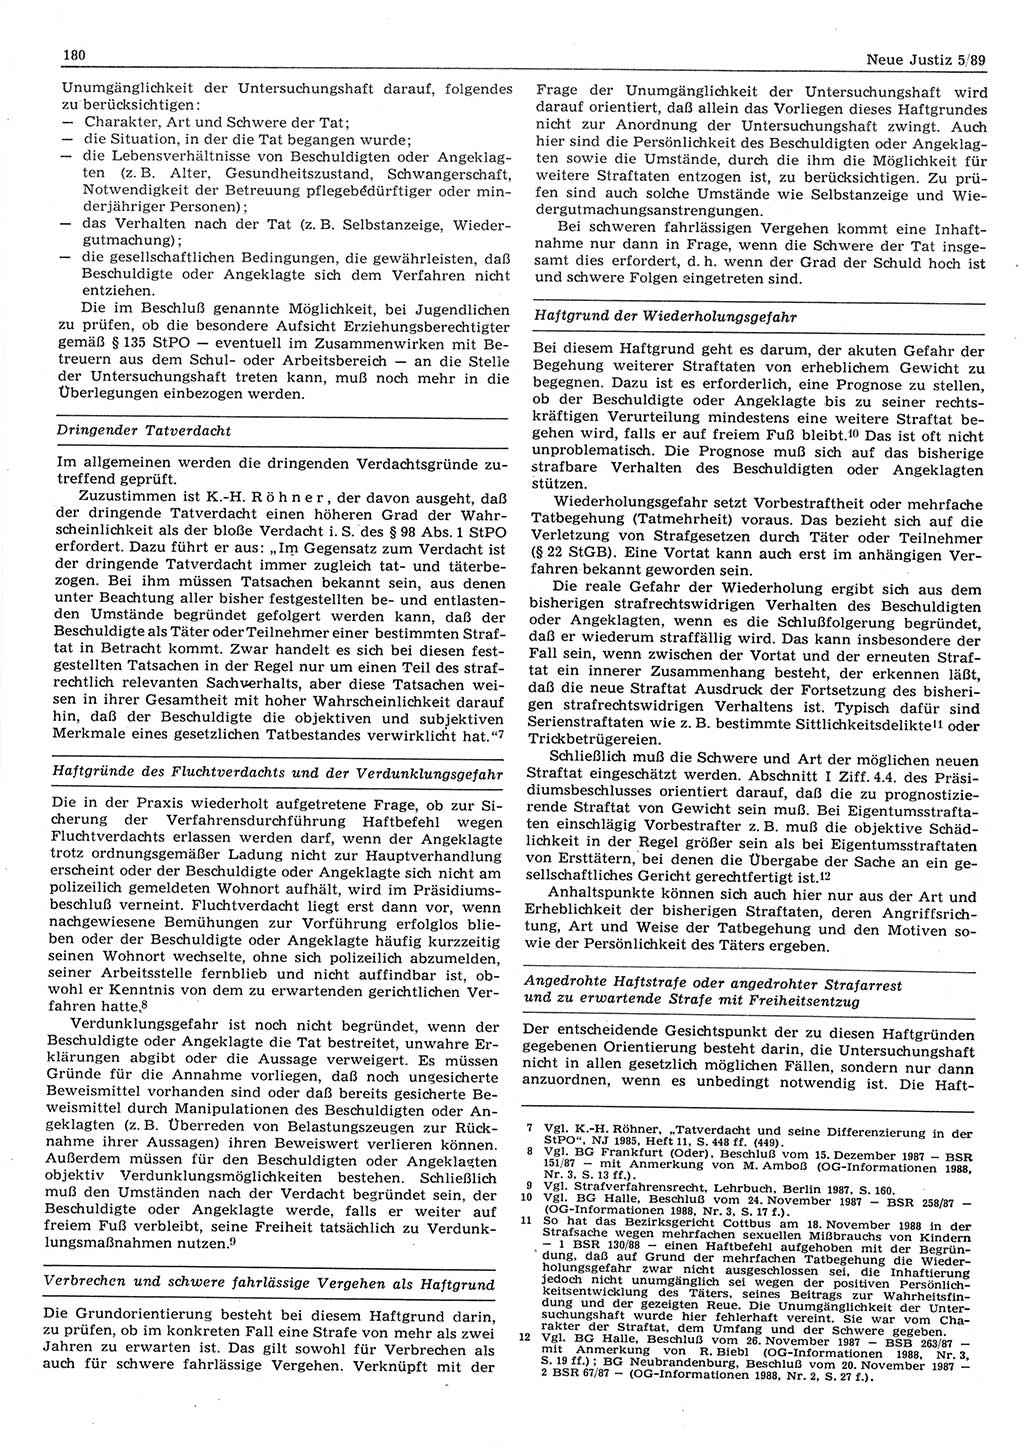 Neue Justiz (NJ), Zeitschrift für sozialistisches Recht und Gesetzlichkeit [Deutsche Demokratische Republik (DDR)], 43. Jahrgang 1989, Seite 180 (NJ DDR 1989, S. 180)